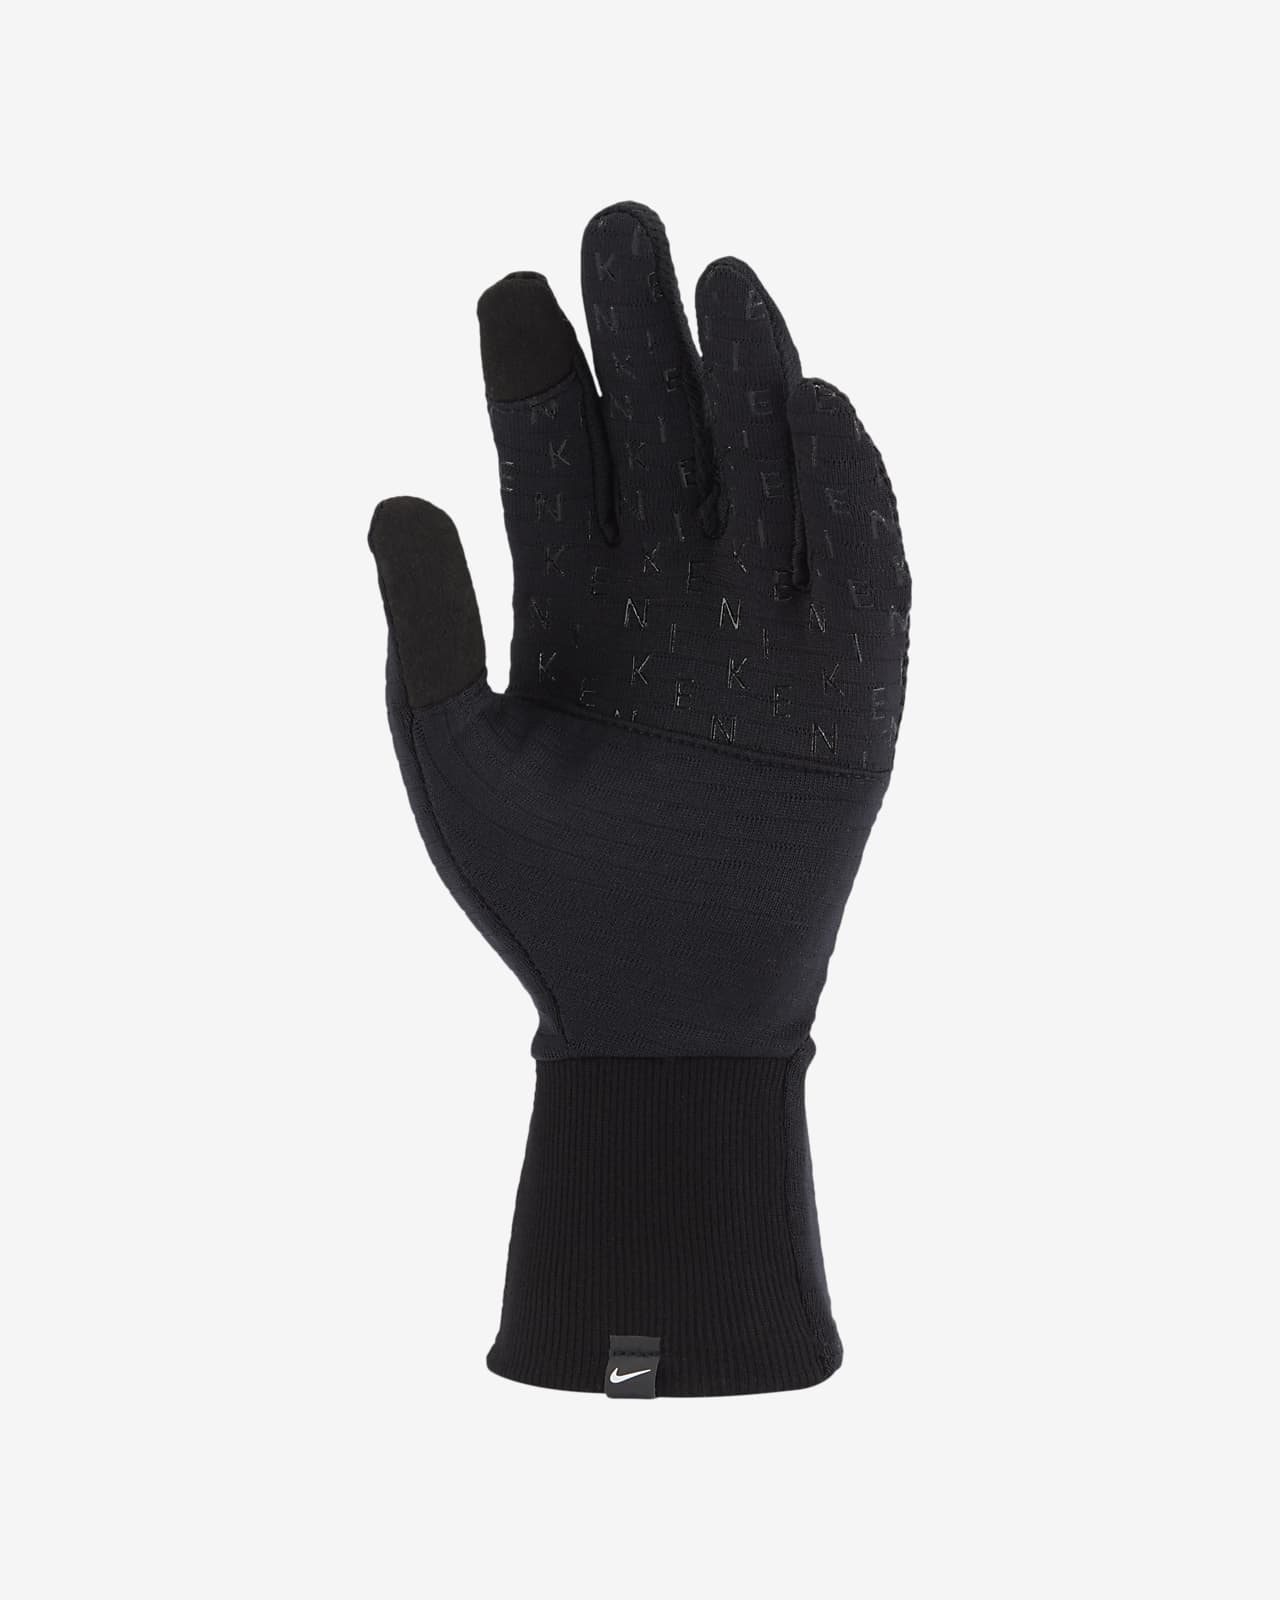 Nike Sphere 360 Women's Running Gloves 